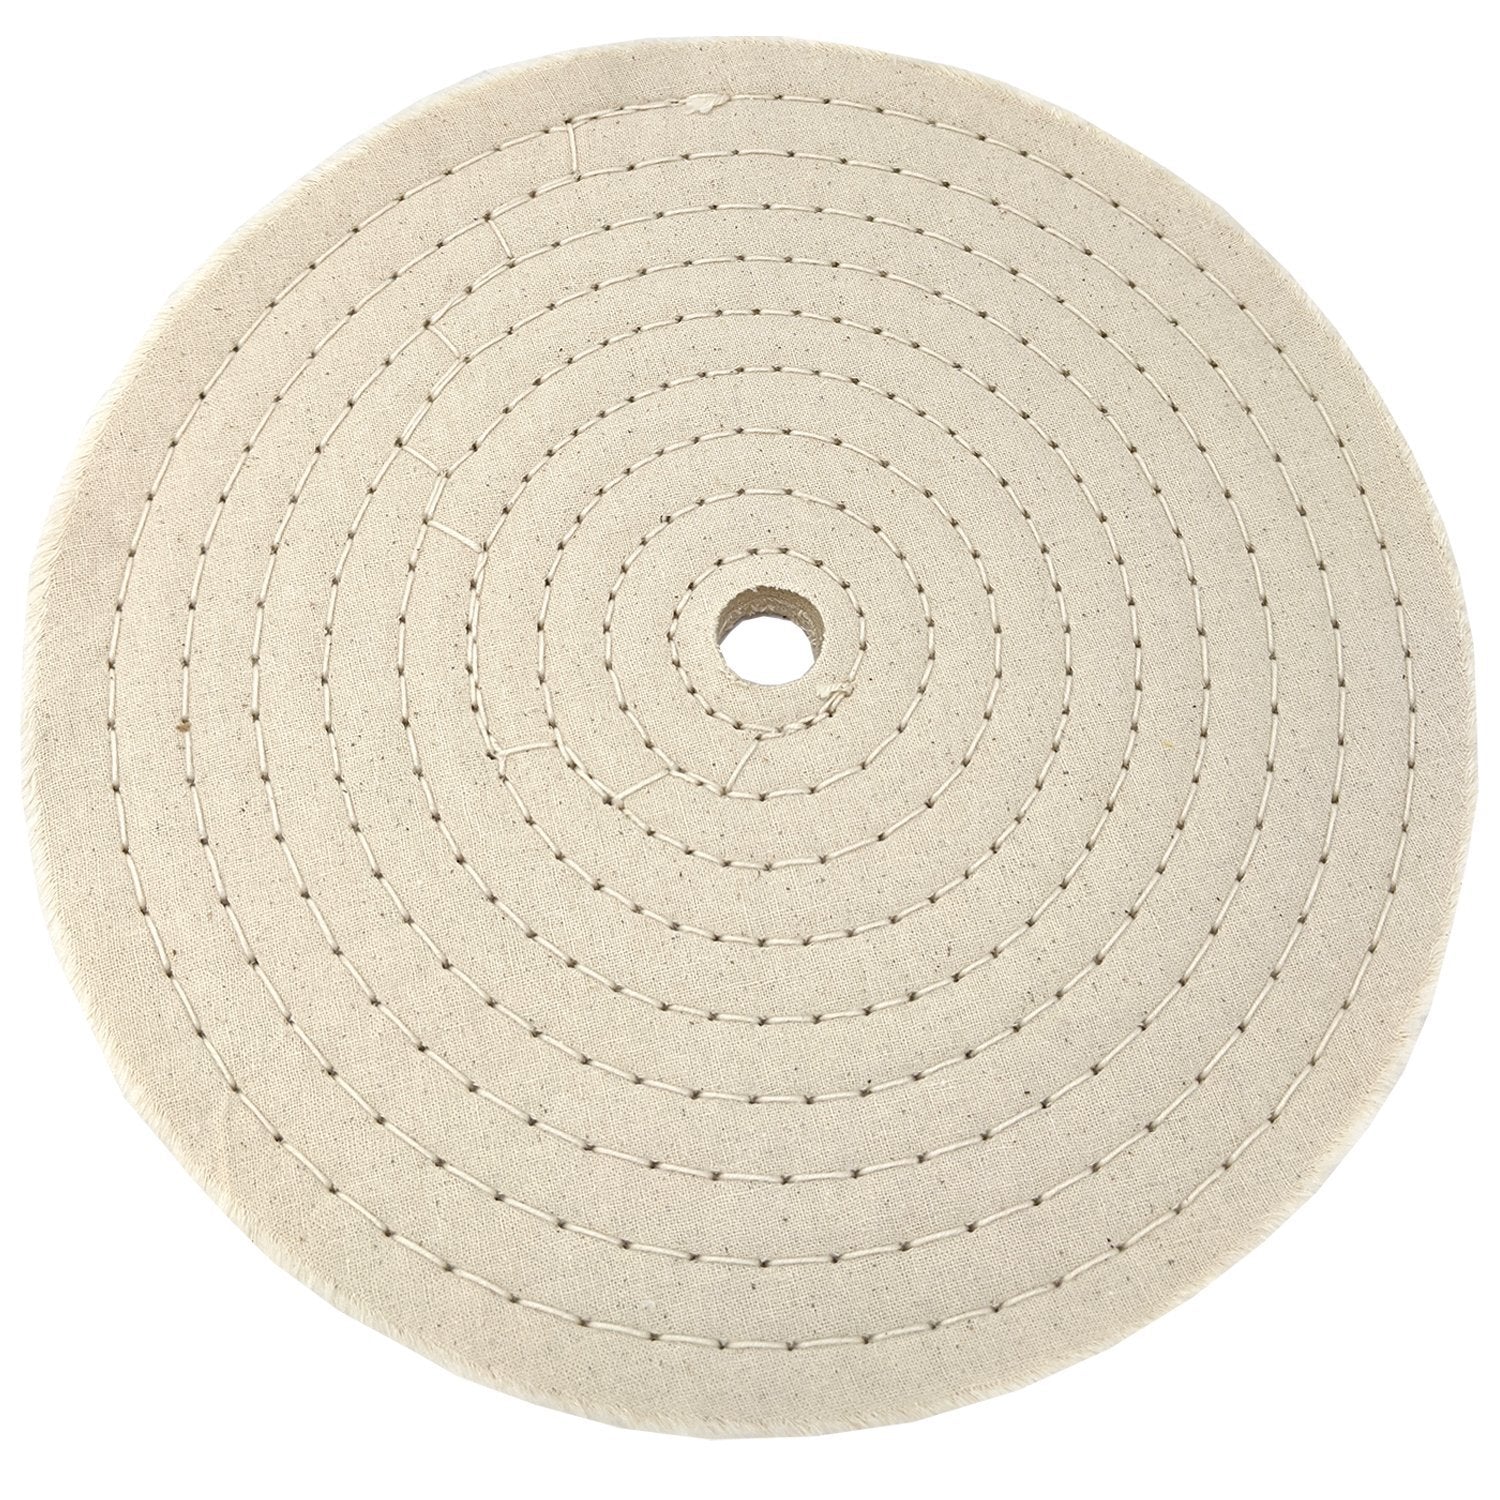 Starlight-polishing Wheel For Drill, 8 Pcs Cotton Polishing Pad